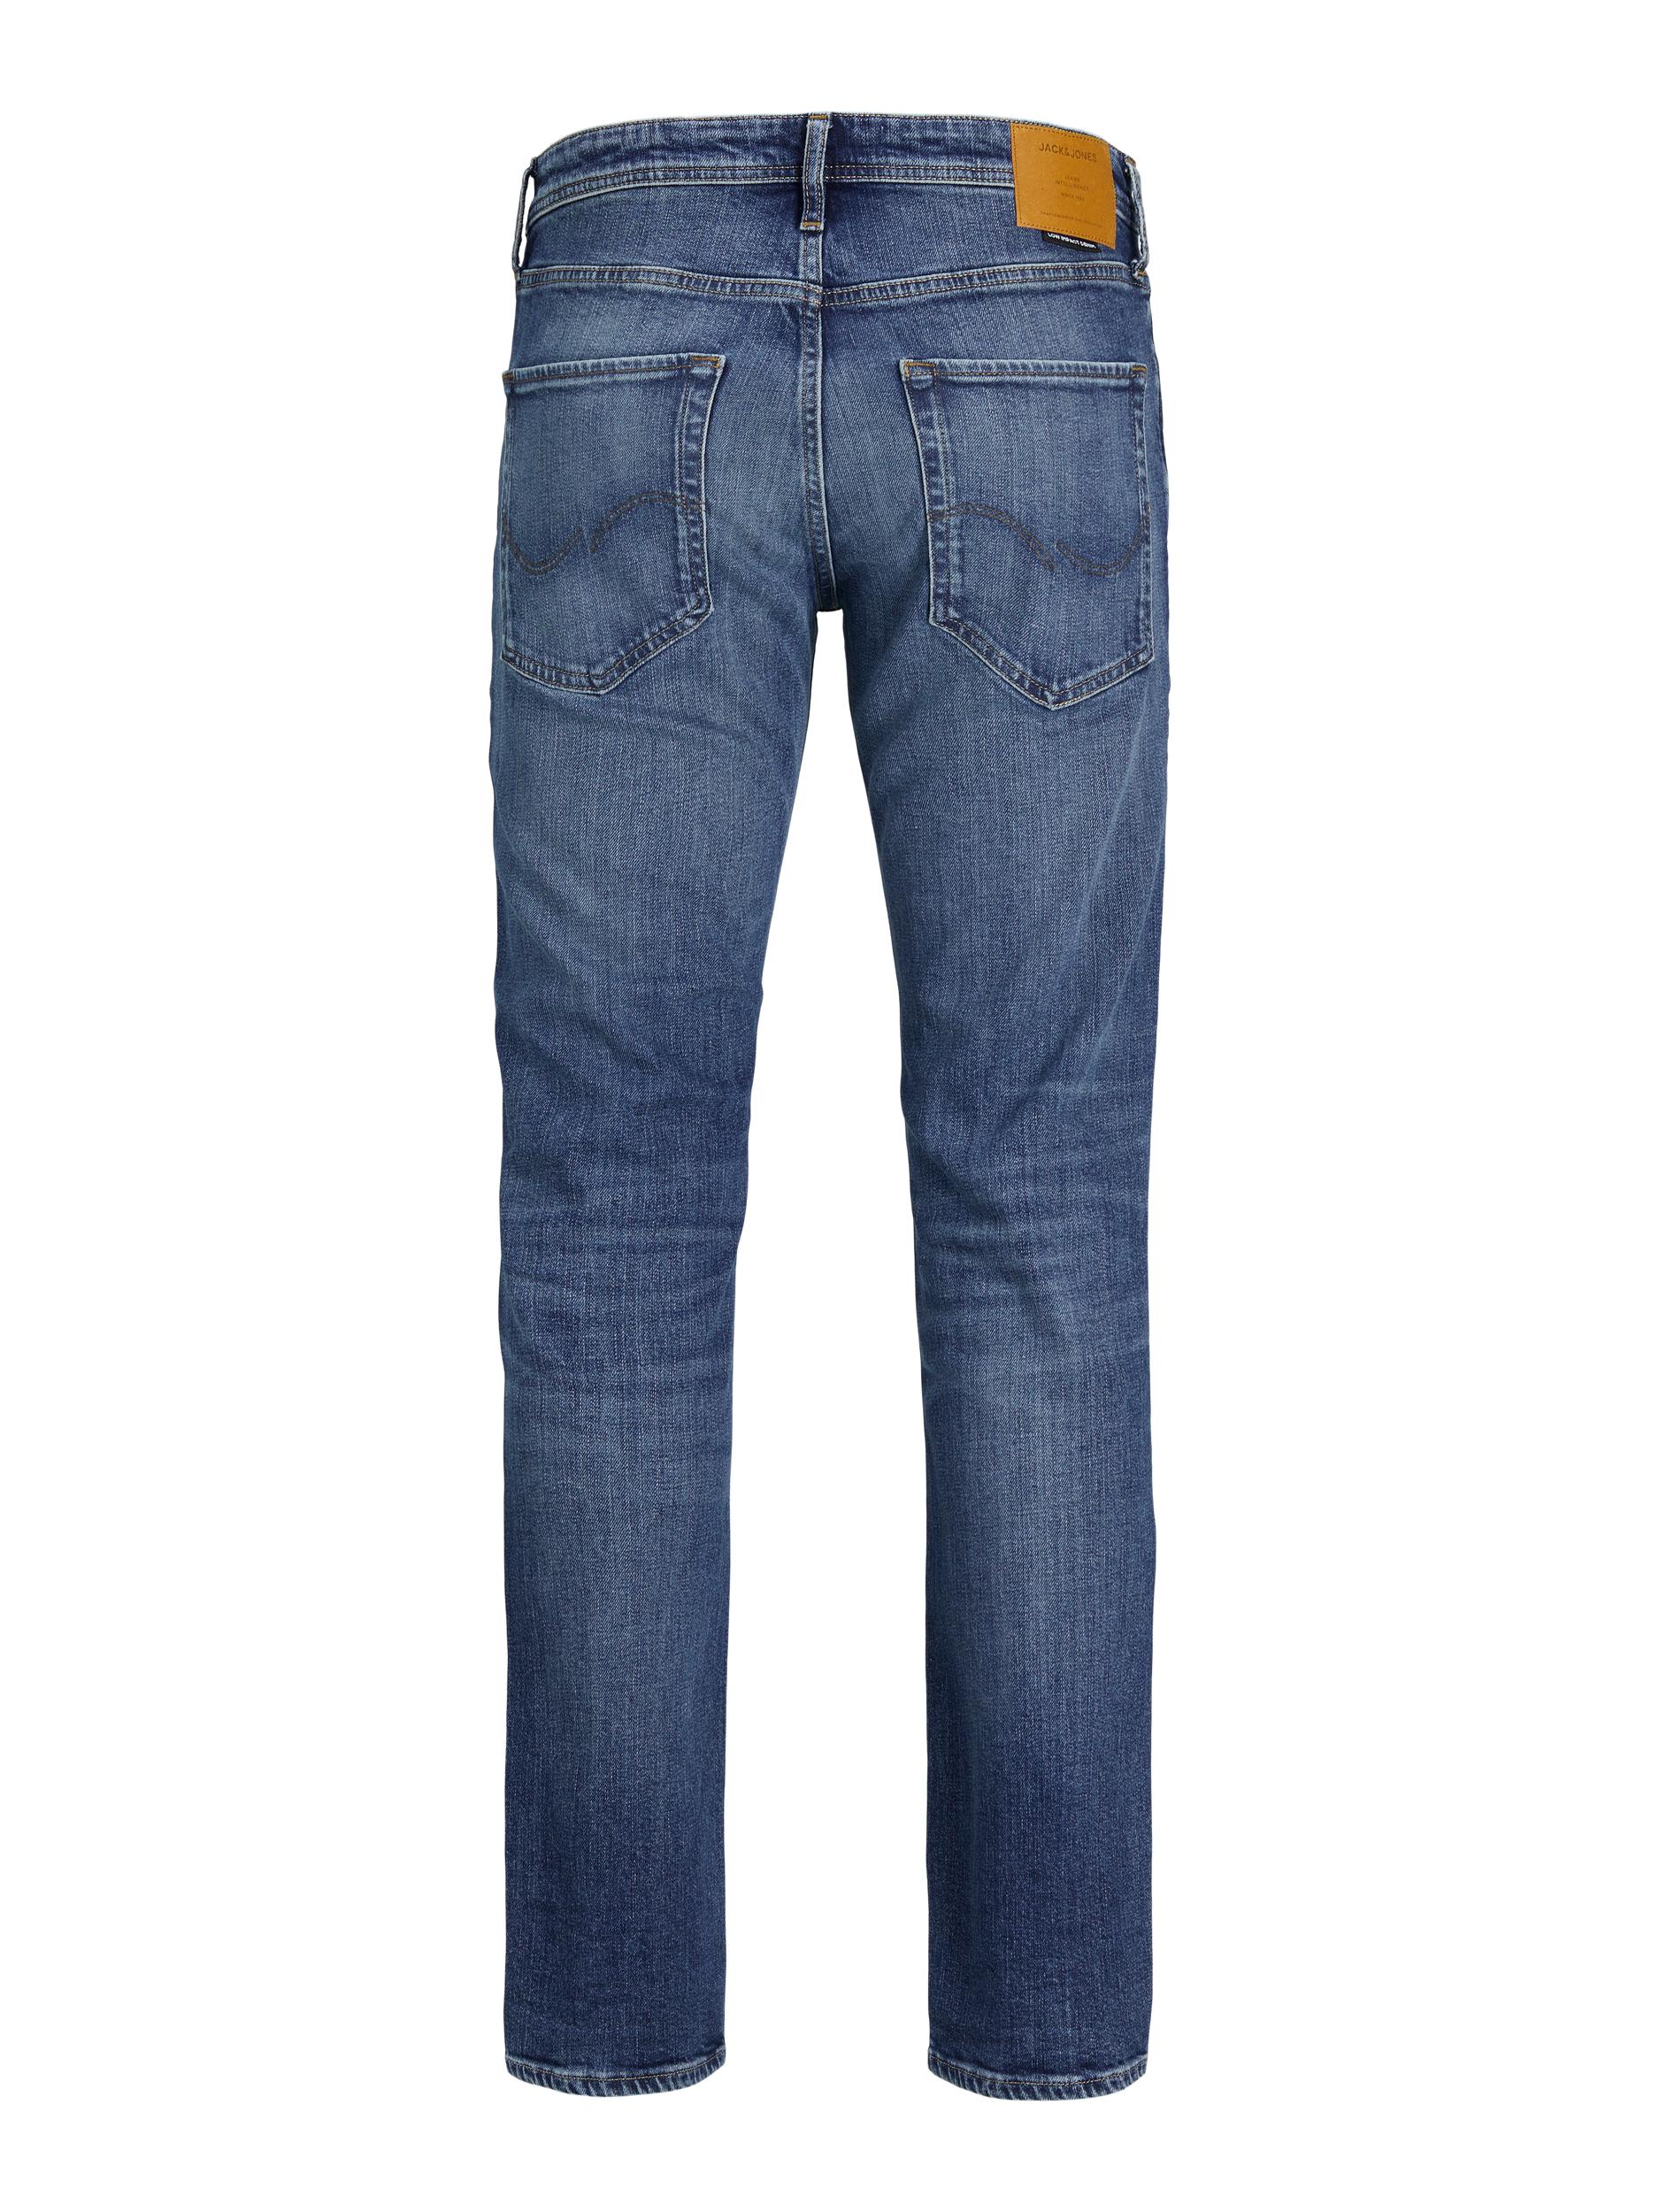  Clark Jeans, Blue Denim, W30/L34